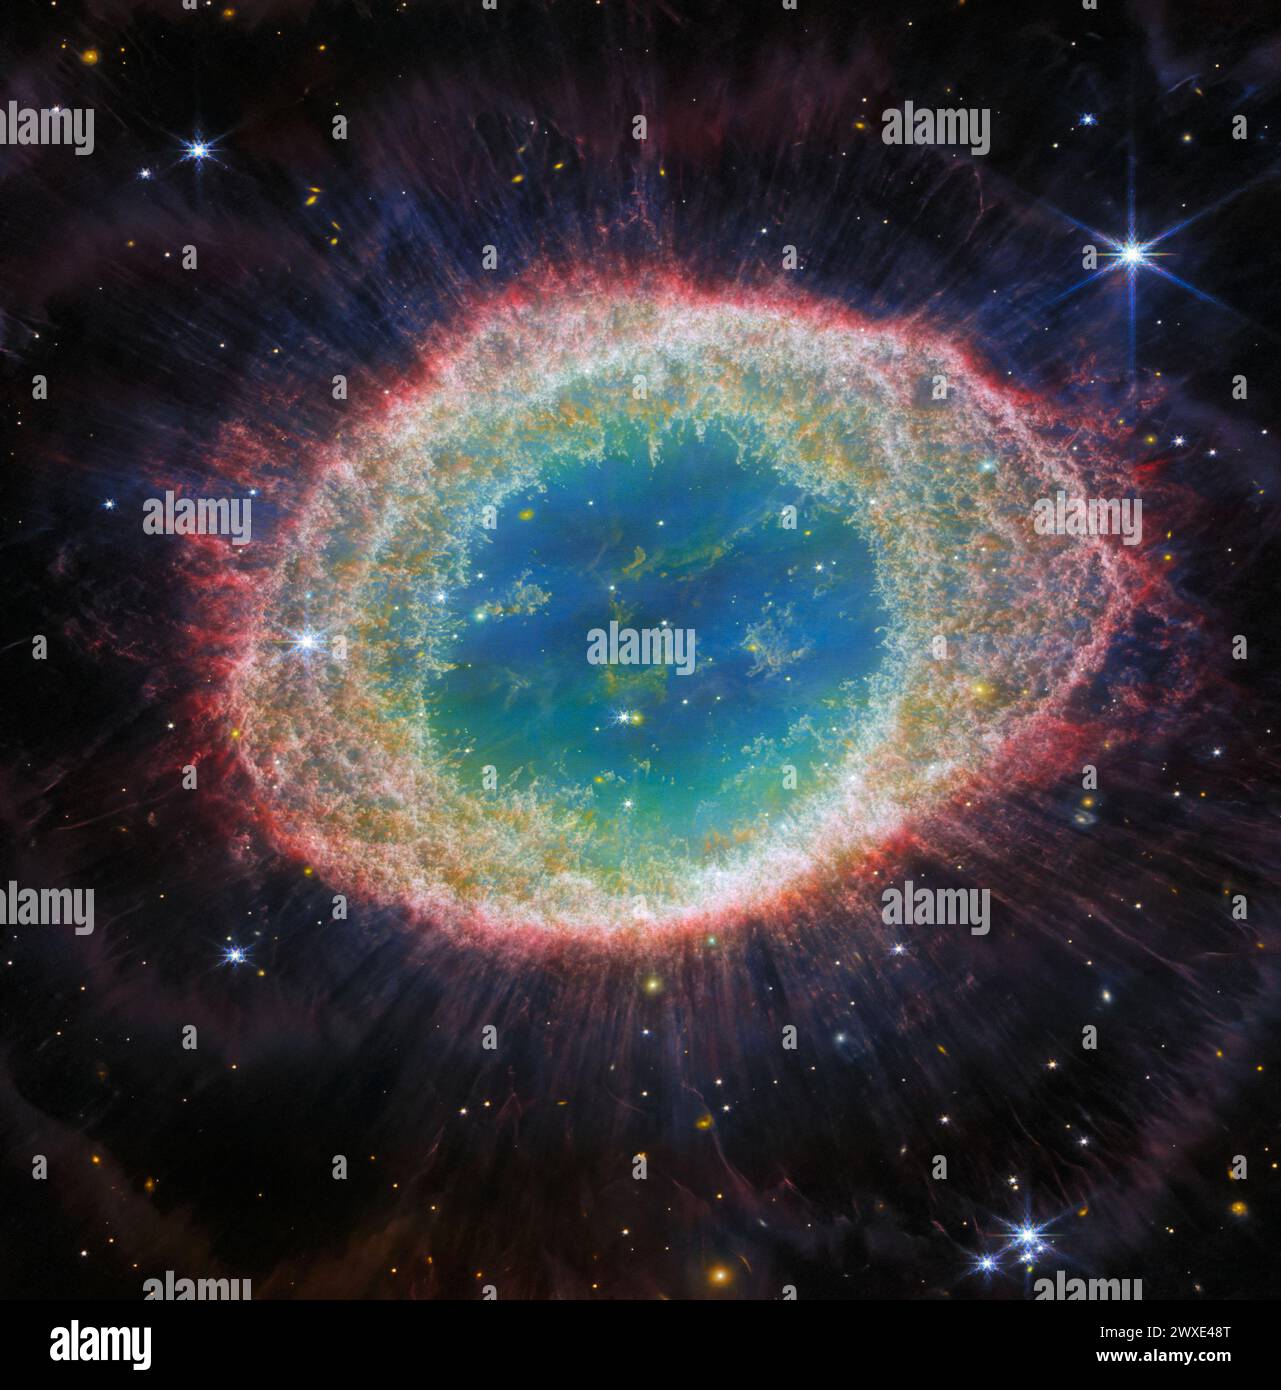 Il NASA/ESA/CSA James Webb Space Telescope ha osservato la ben nota Nebulosa ad anello con dettagli senza precedenti. Formata da una stella che getta i suoi strati esterni mentre esaurisce il carburante, la Nebulosa dell'anello è una nebulosa planetaria archetipo. Conosciuto anche come M57 e NGC 6720, è relativamente vicino alla Terra a circa 2.500 anni luce di distanza. Questa nuova immagine offre una risoluzione spaziale e una sensibilità spettrale senza precedenti. La regione interna dell'anello ha elementi di filamento distinti. CREDITI: NASA/ESA/CSA Foto Stock